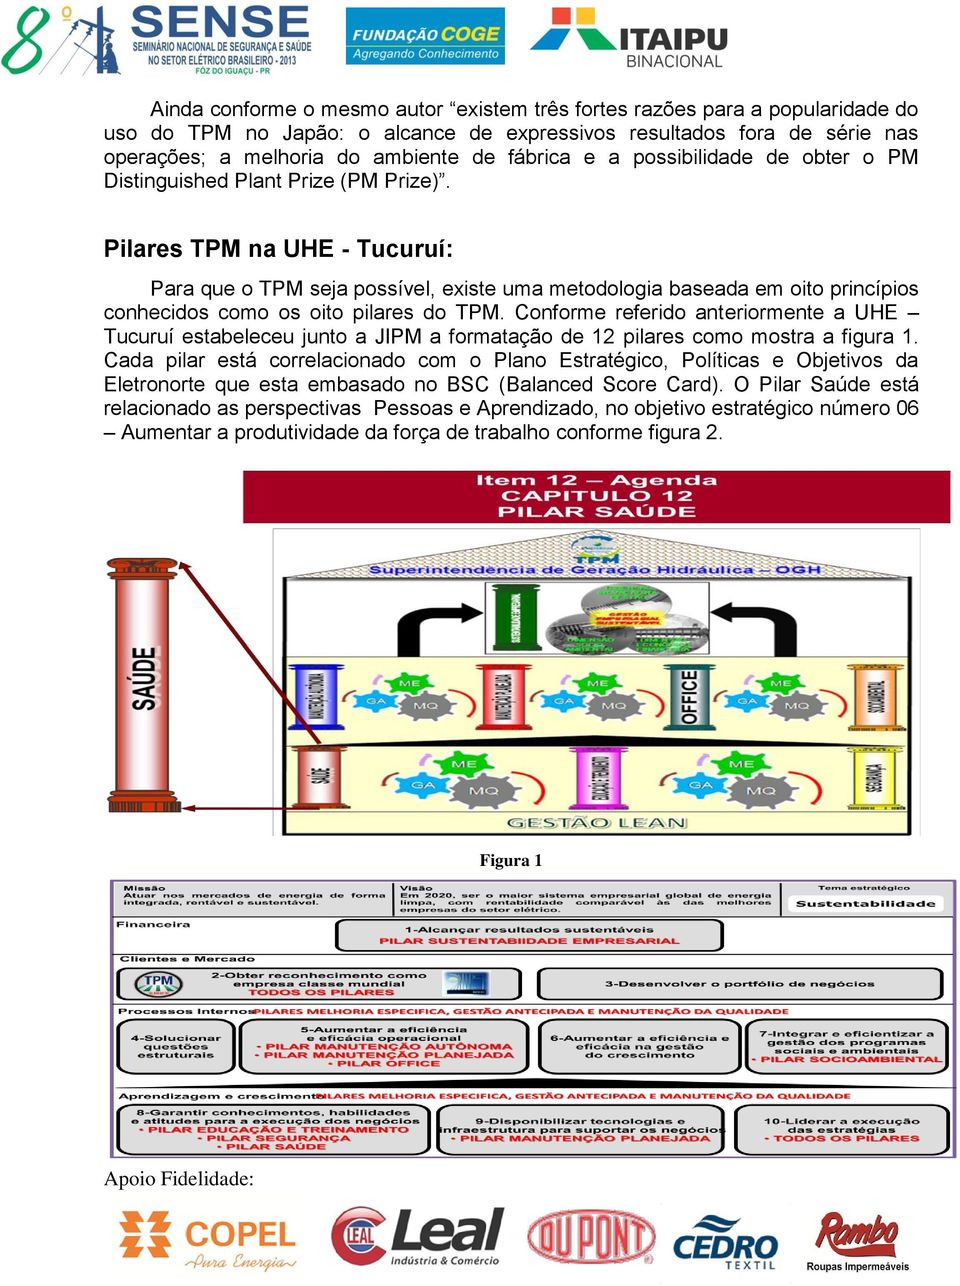 Pilares TPM na UHE - Tucuruí: Para que o TPM seja possível, existe uma metodologia baseada em oito princípios conhecidos como os oito pilares do TPM.